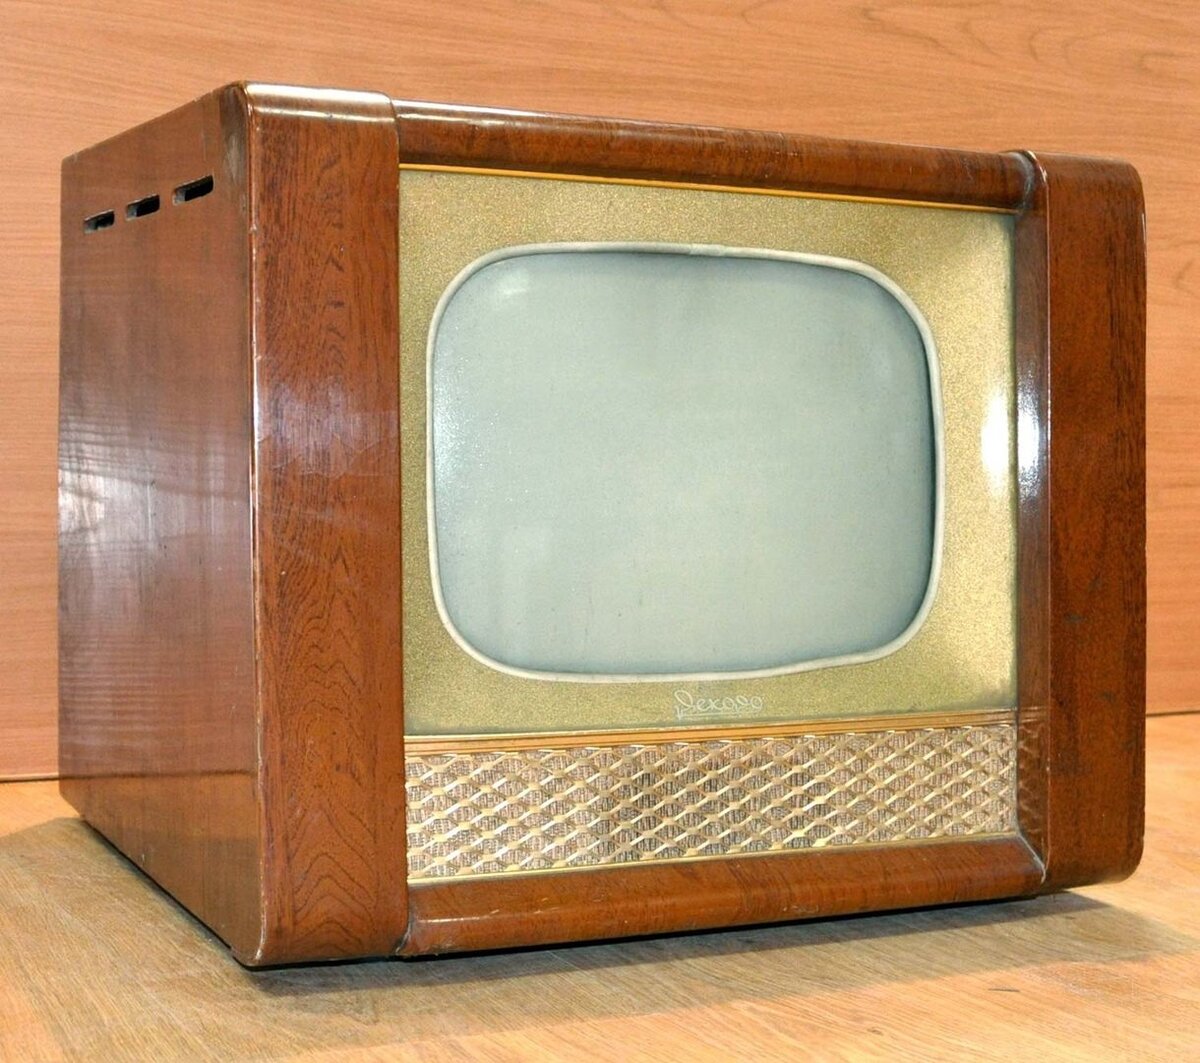 Телевизор рекорд 1956